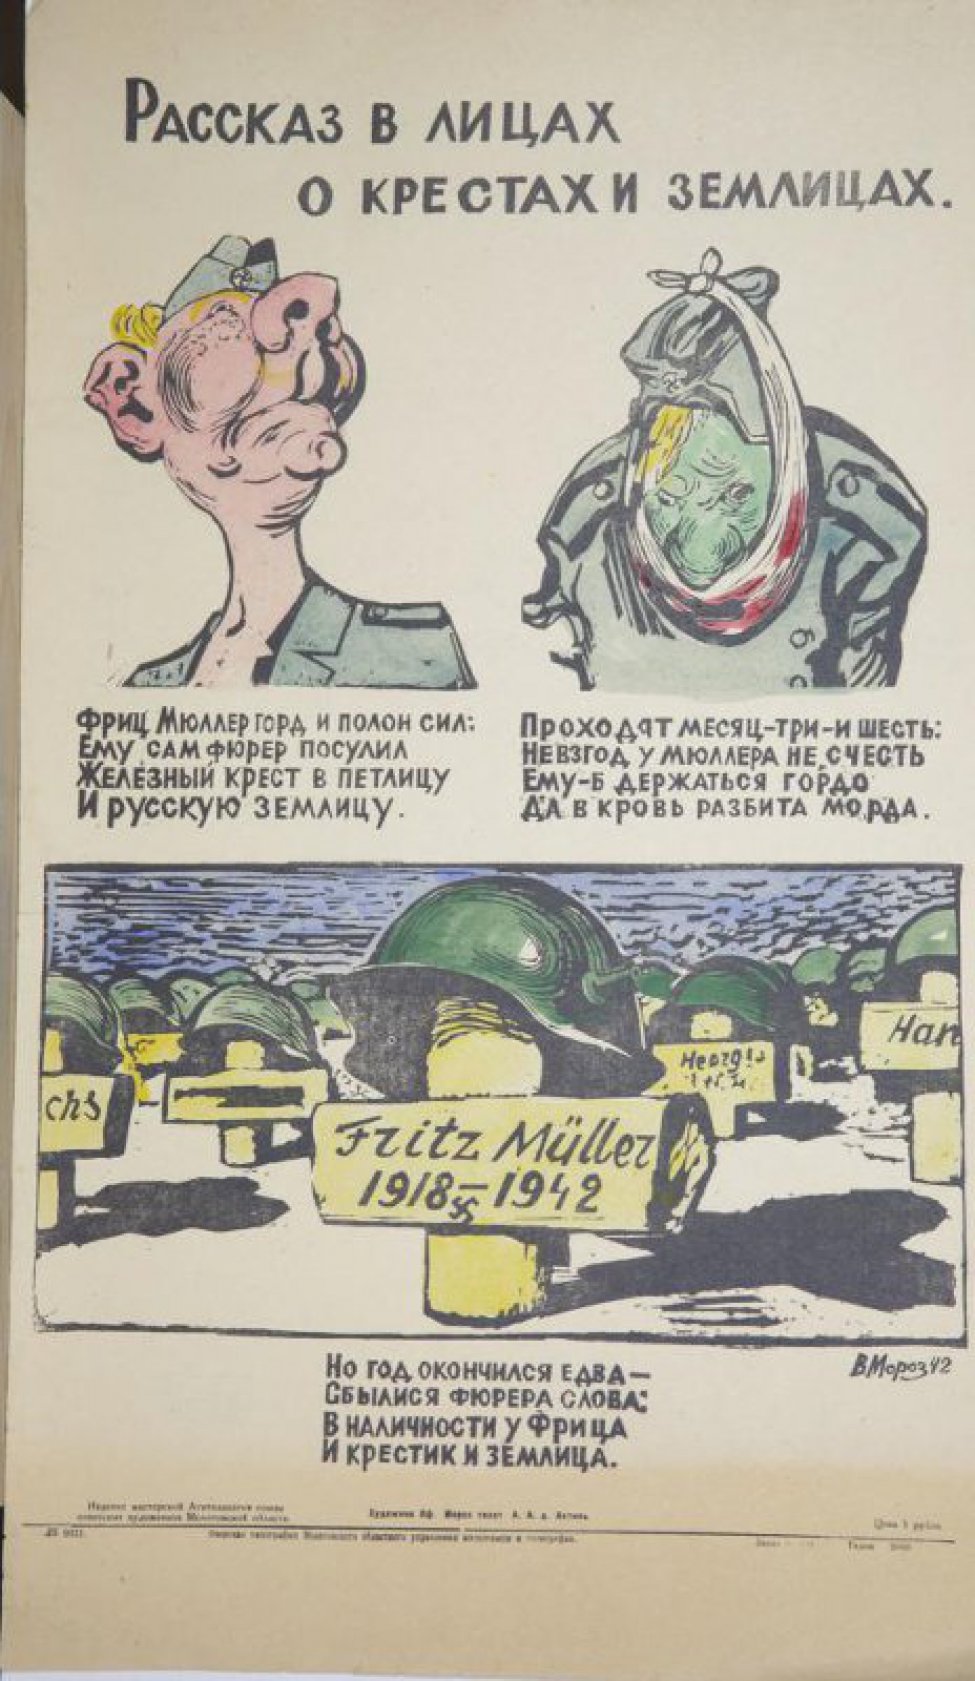 Изображен на первом рисунке фриц Мюллер с гордым видом, на втором голова с повязкой, на третьем голова в каске с надписью:" Fpitz Muller 1918-1942г." Под каждым рисунком текст: "Фриц... землица".